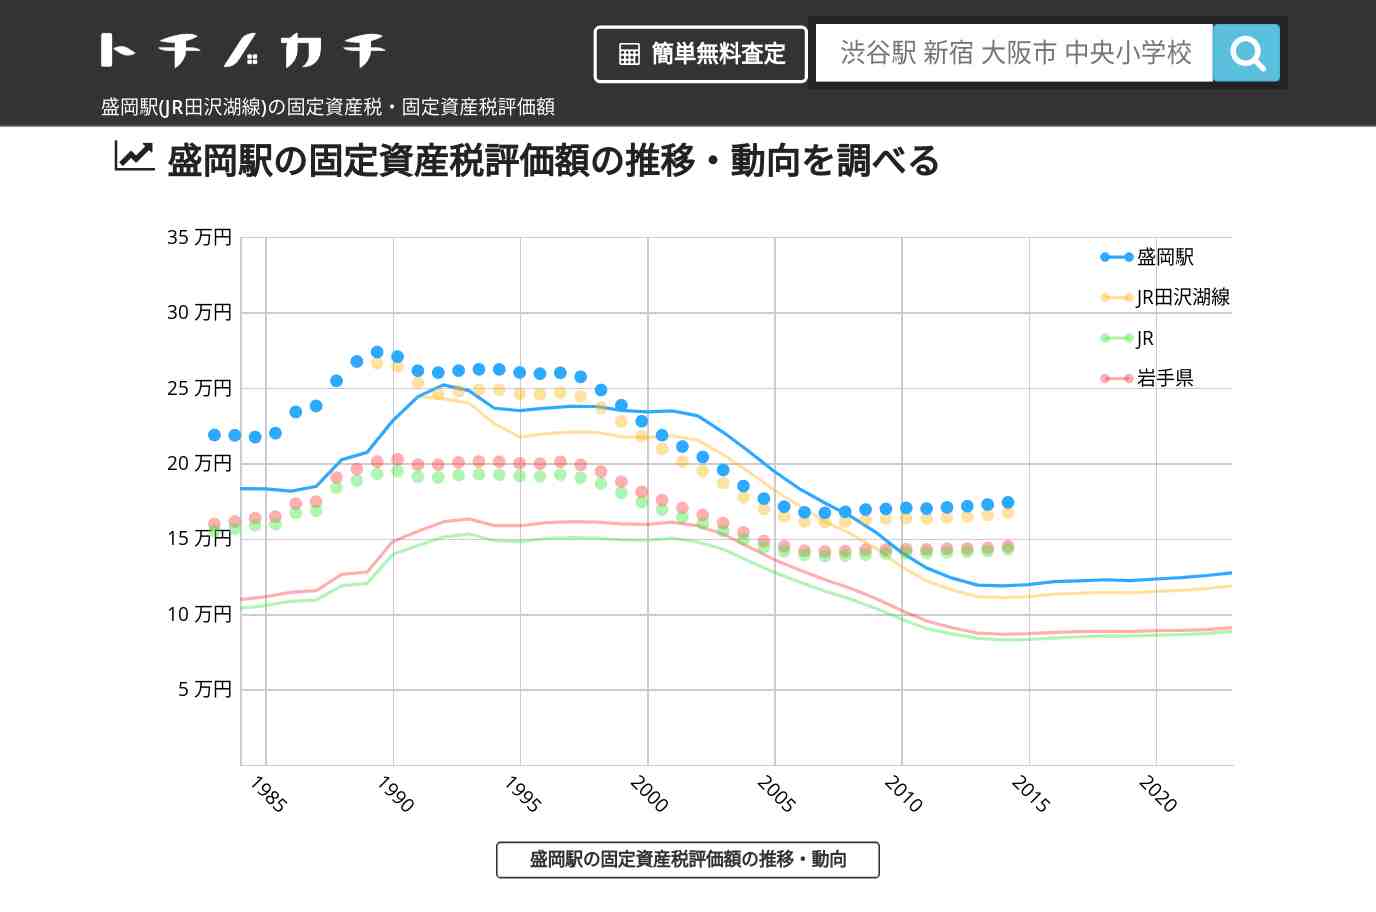 盛岡駅(JR田沢湖線)の固定資産税・固定資産税評価額 | トチノカチ